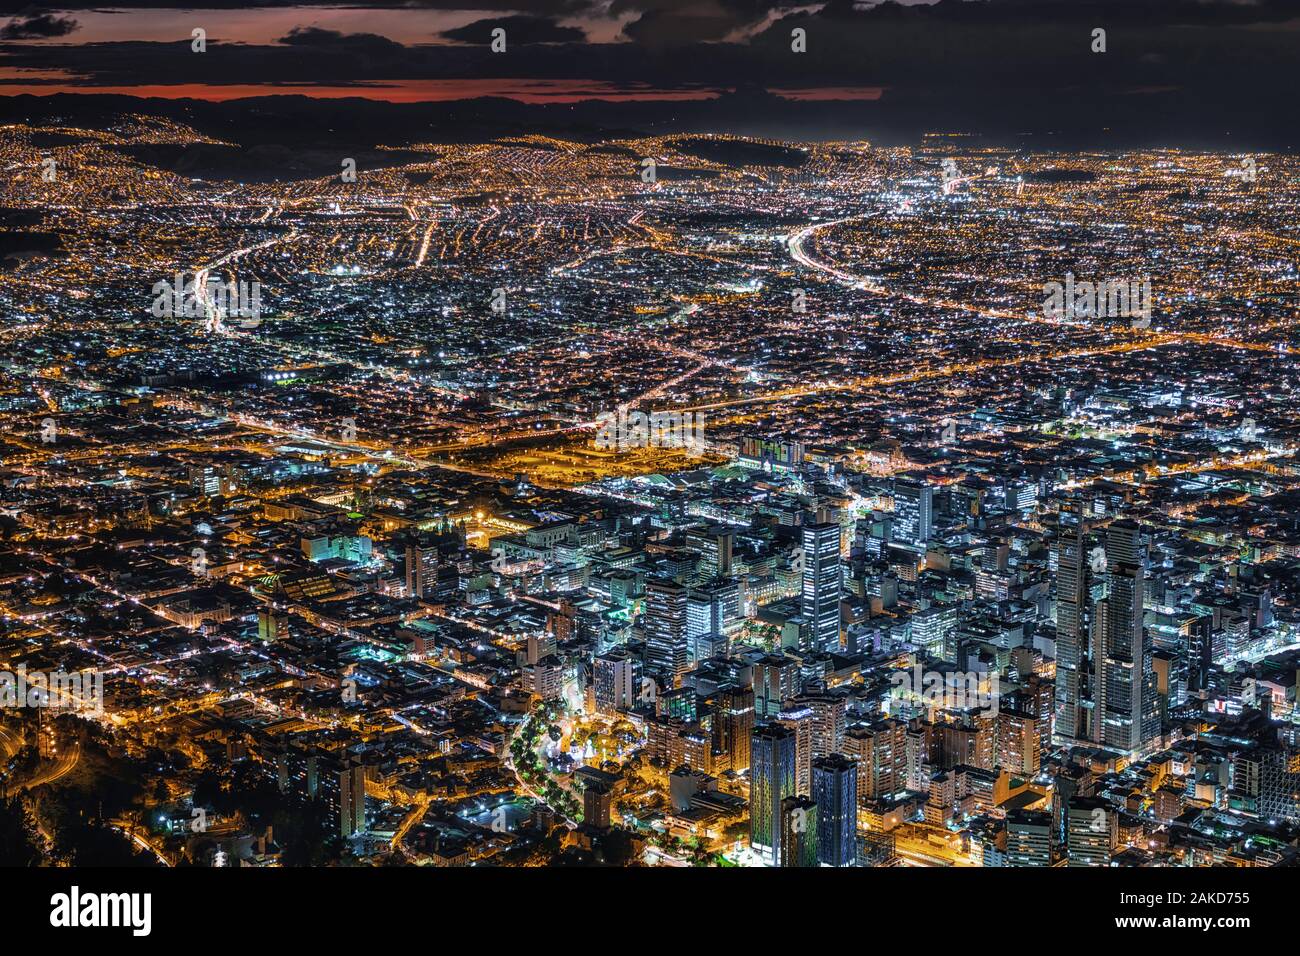 Bogota, Colombie, vue de paysage urbain avec des édifices du centre-ville illuminée au crépuscule. Banque D'Images